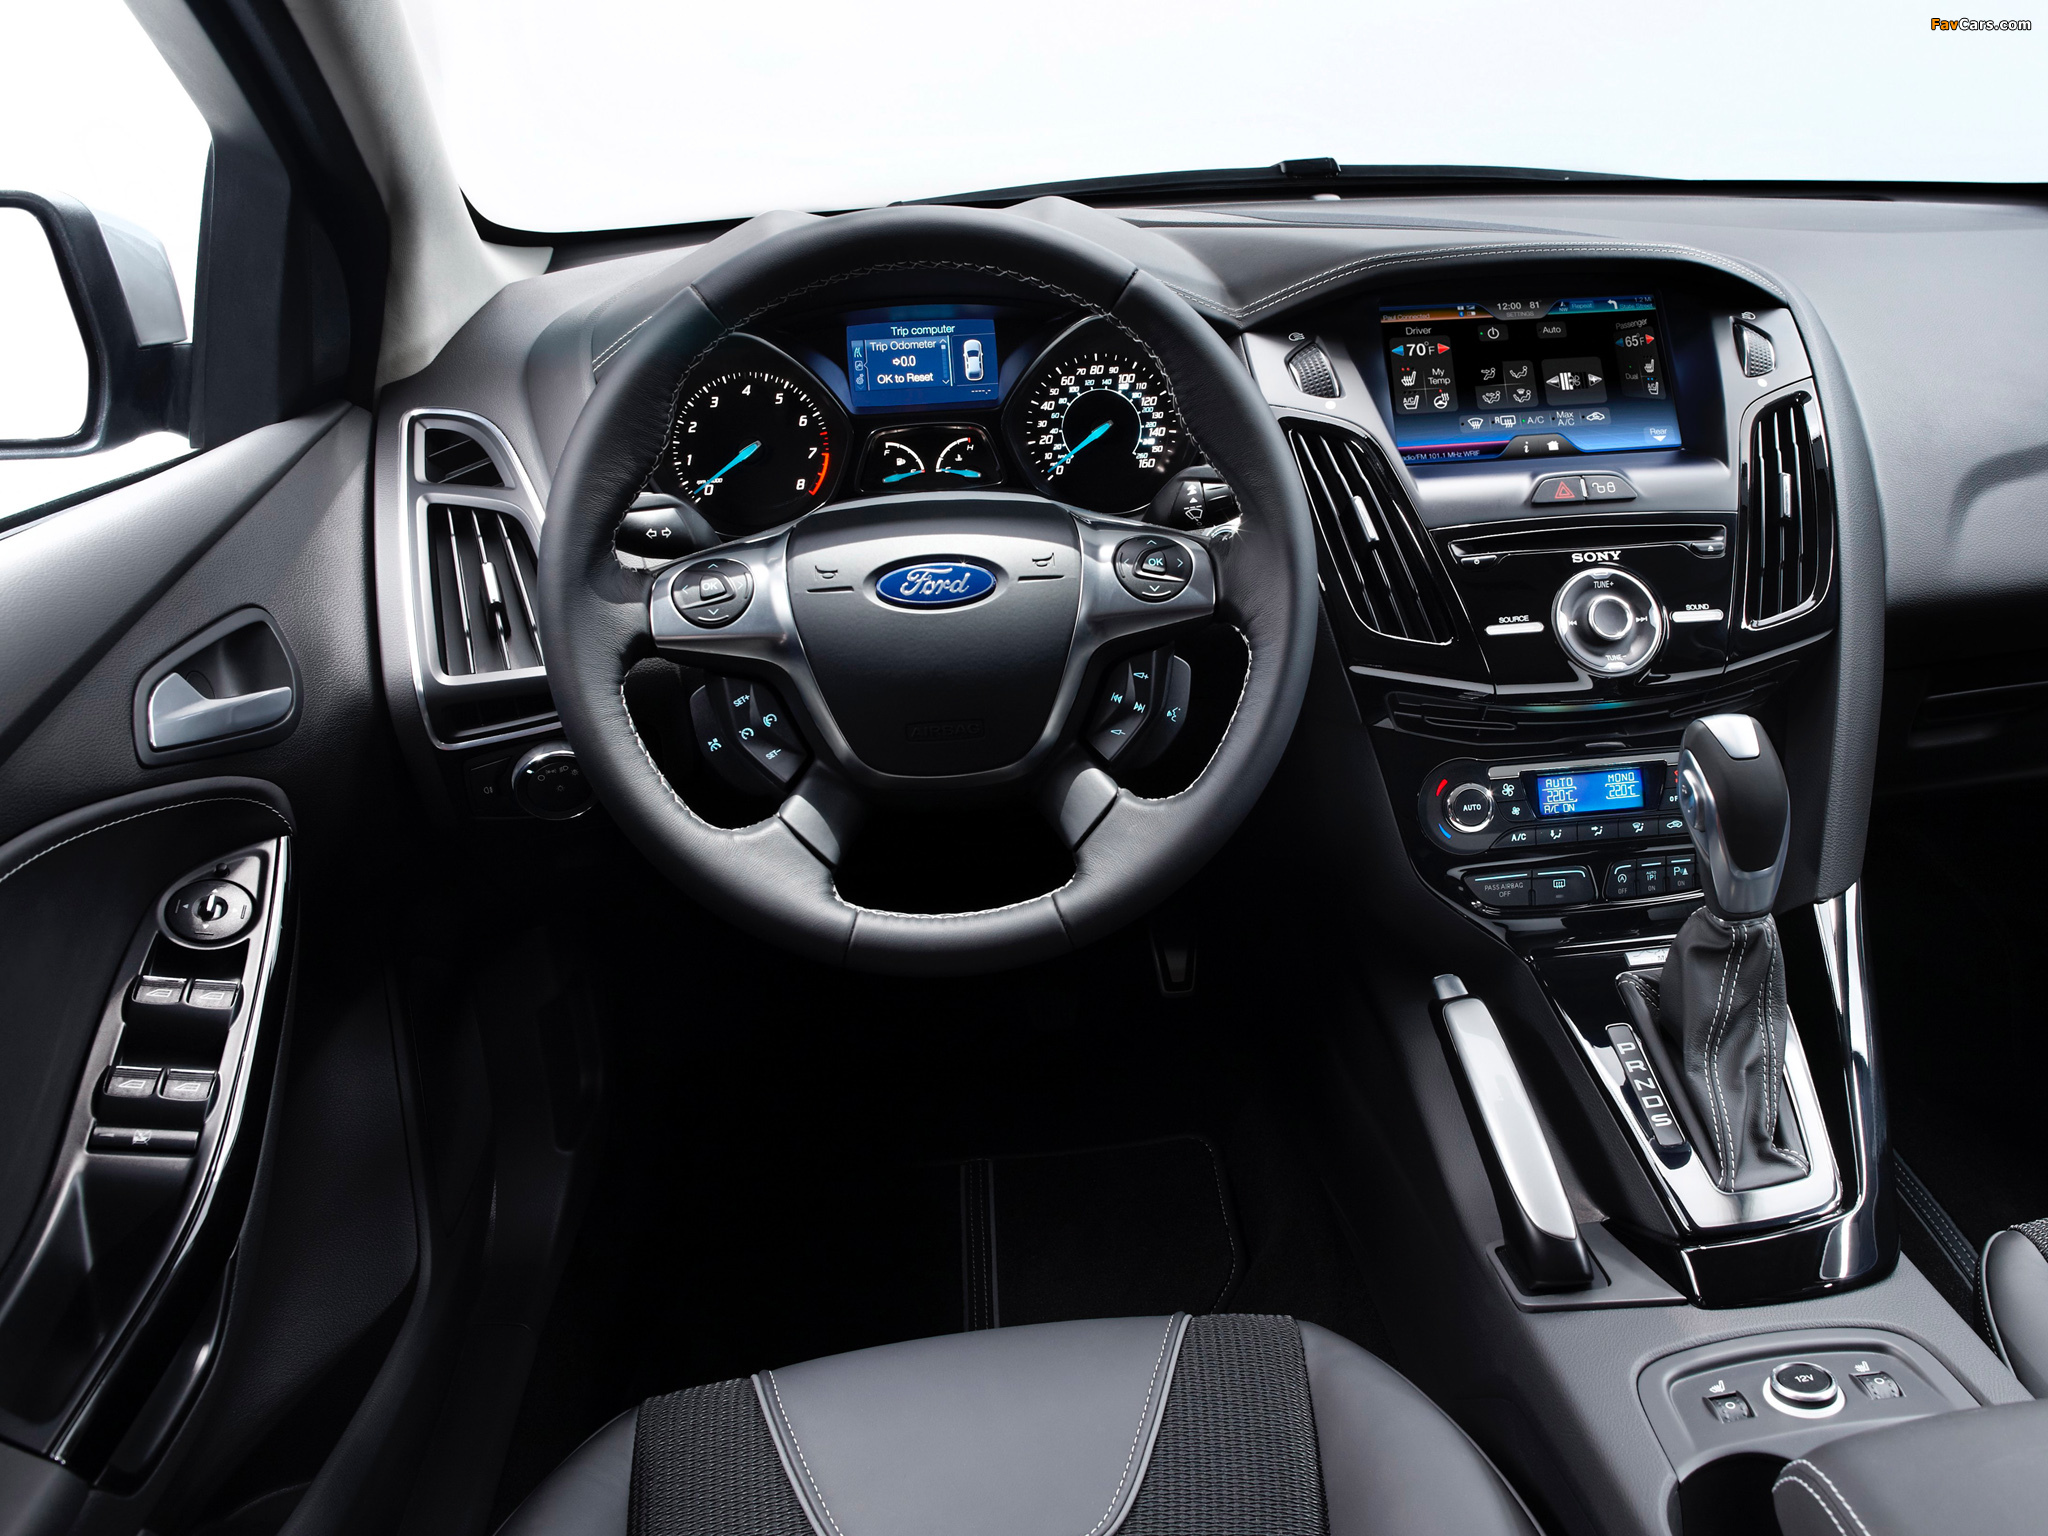 Ford Focus Sedan US-spec 2011 images (2048 x 1536)